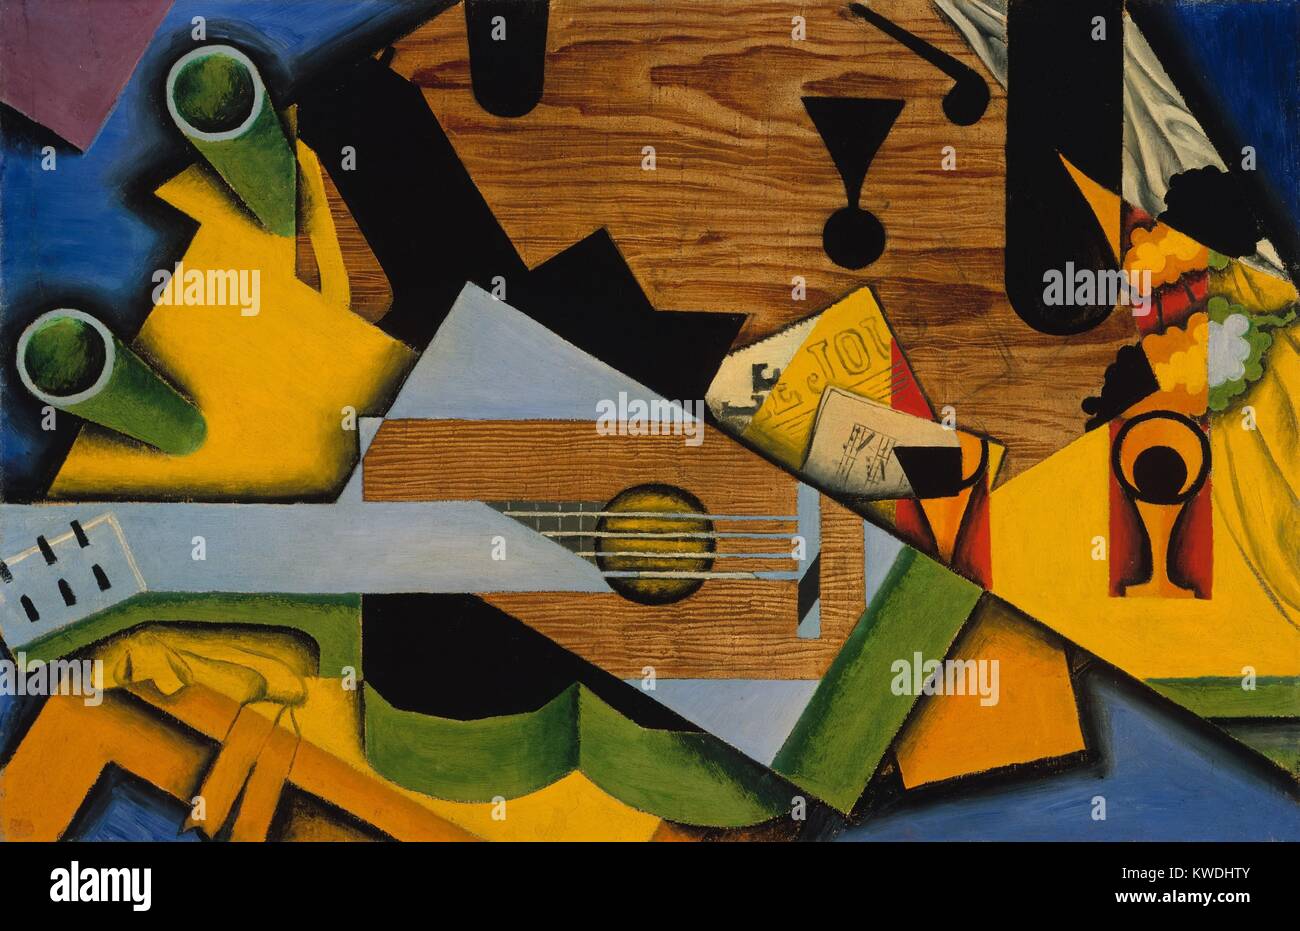 Nature morte avec une guitare, par Juan Gris, 1913, l'espagnol la peinture cubiste, huile sur toile. Ce travail est fortement influencé par le deuxième style Picasso/Braque, le cubisme synthétique comme Gris. Télévision Les formulaires sont extraites des objets, tandis que d'autres sont indépendants de la géométrie imposée sujet (BSLOC 2017 7 4) Banque D'Images